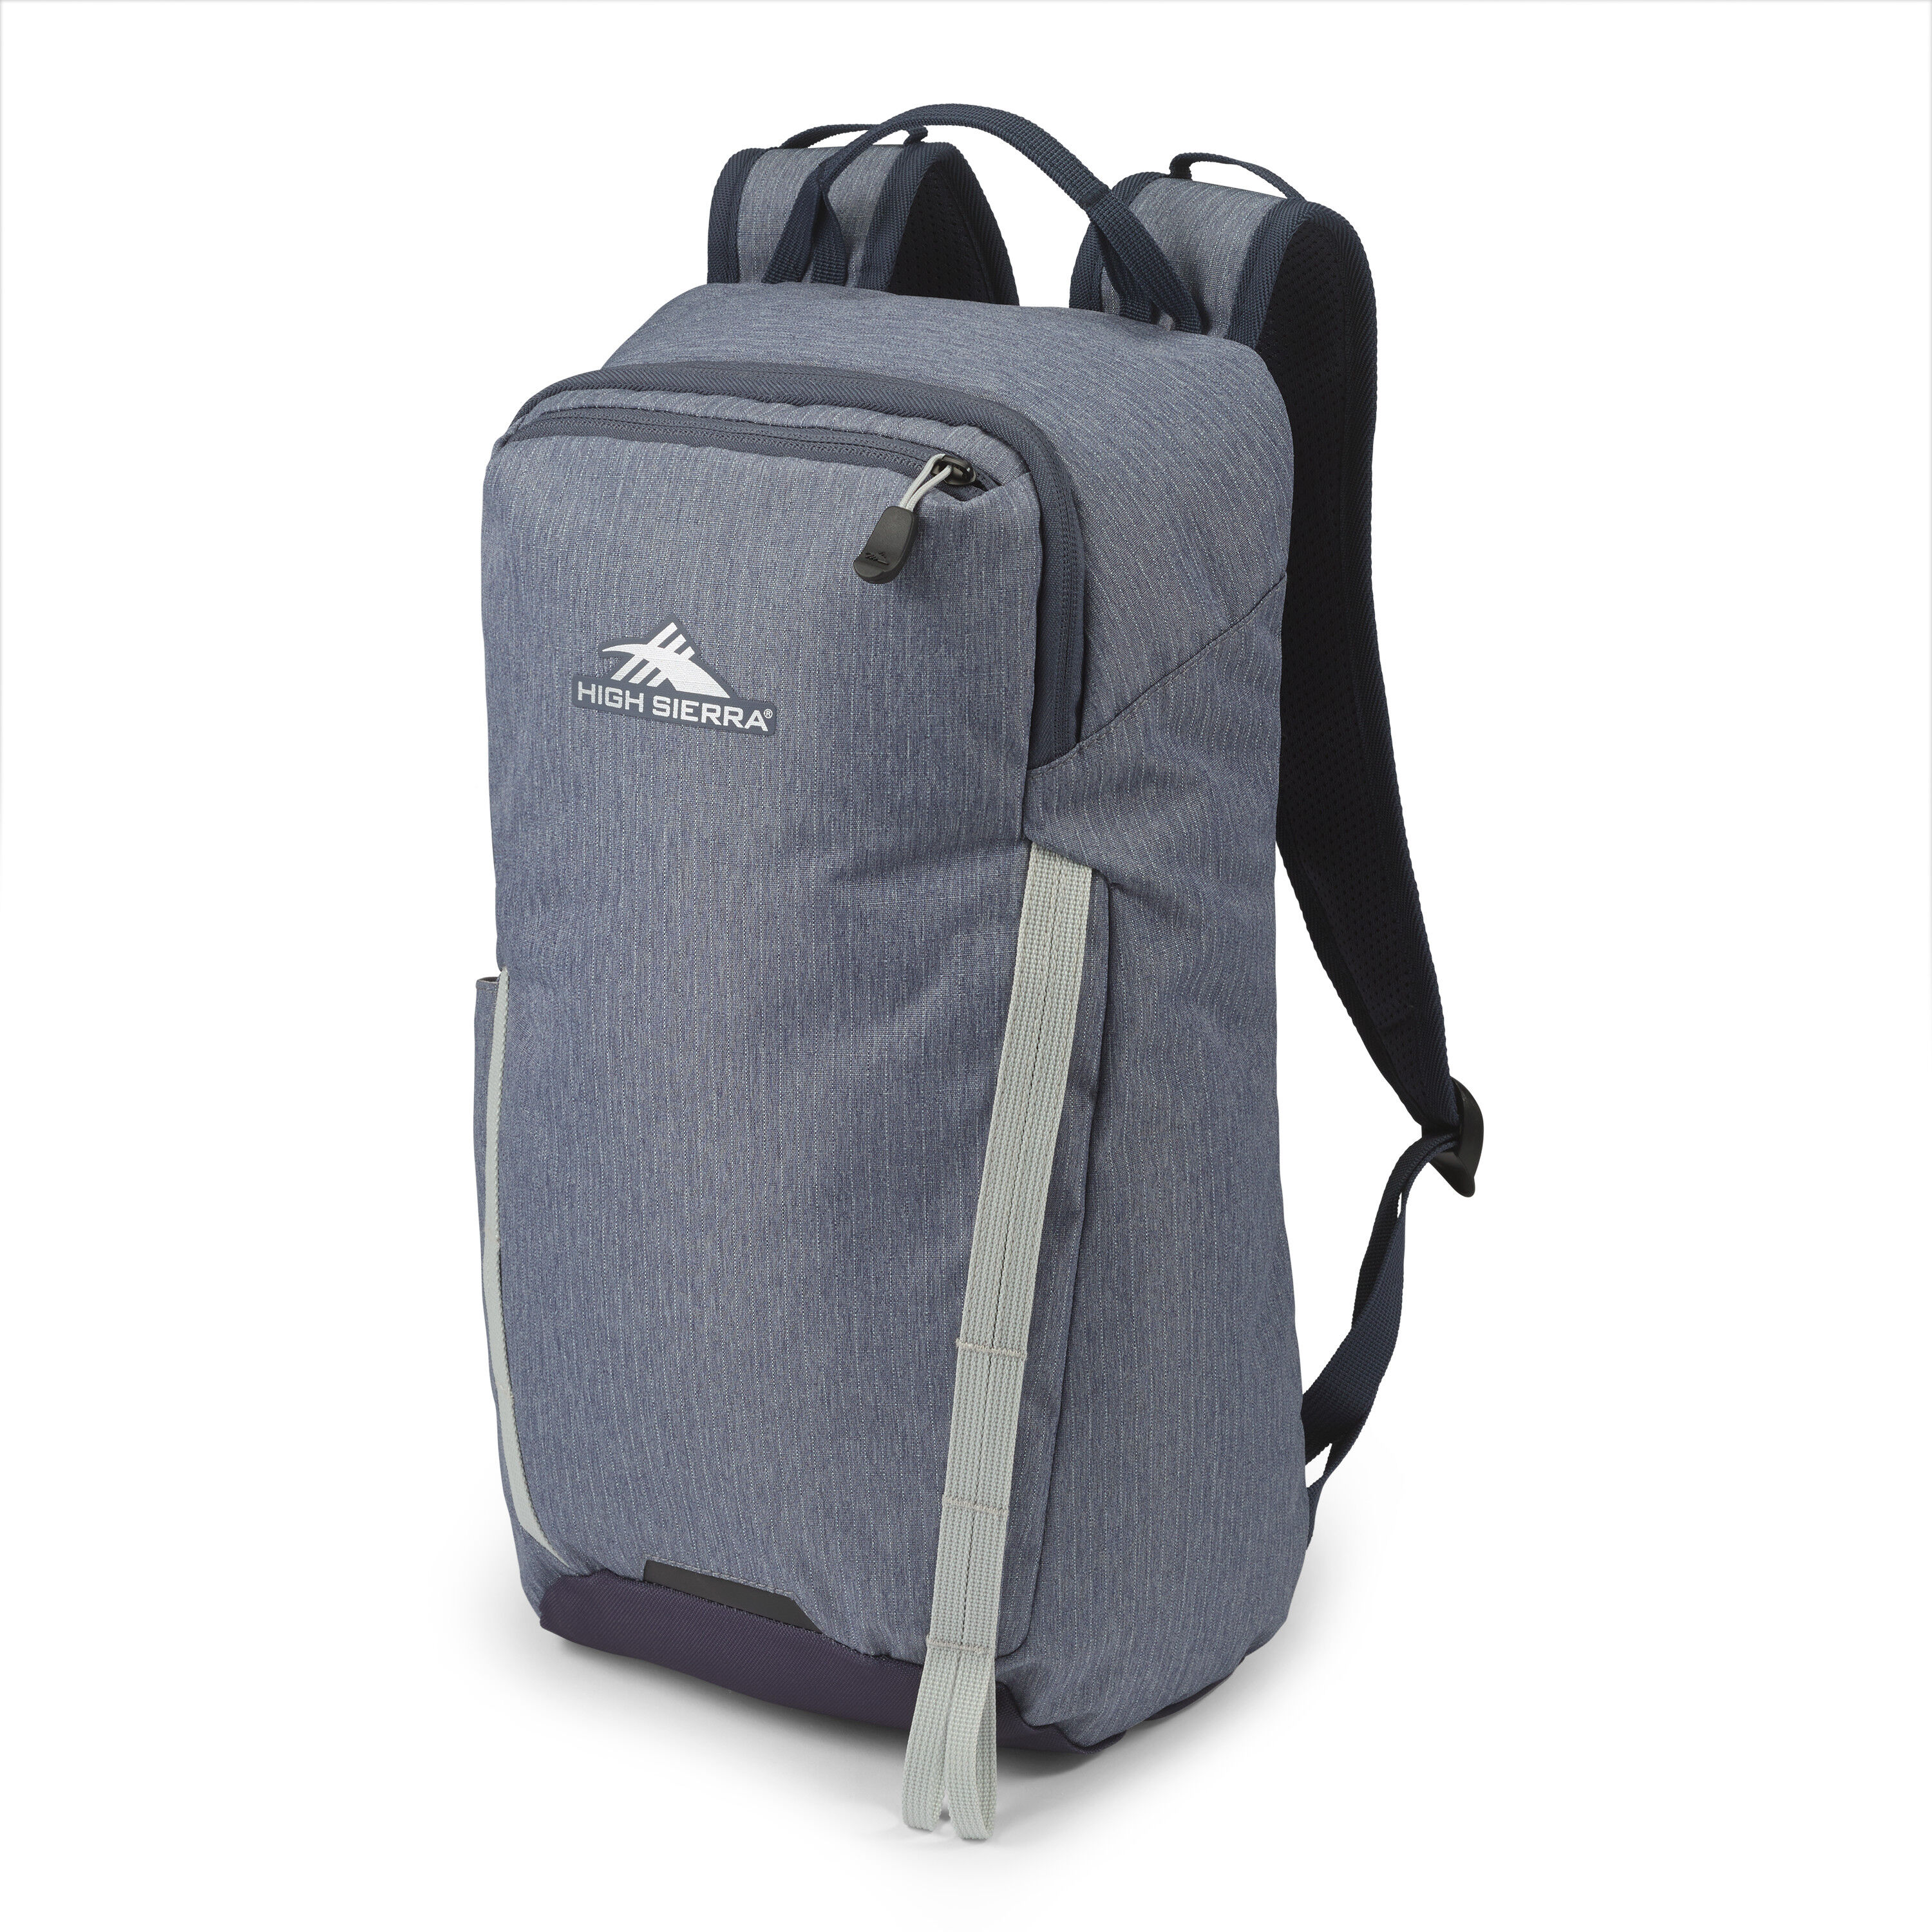 Buy Outside Commuter Backpack for USD 54.99 | High Sierra